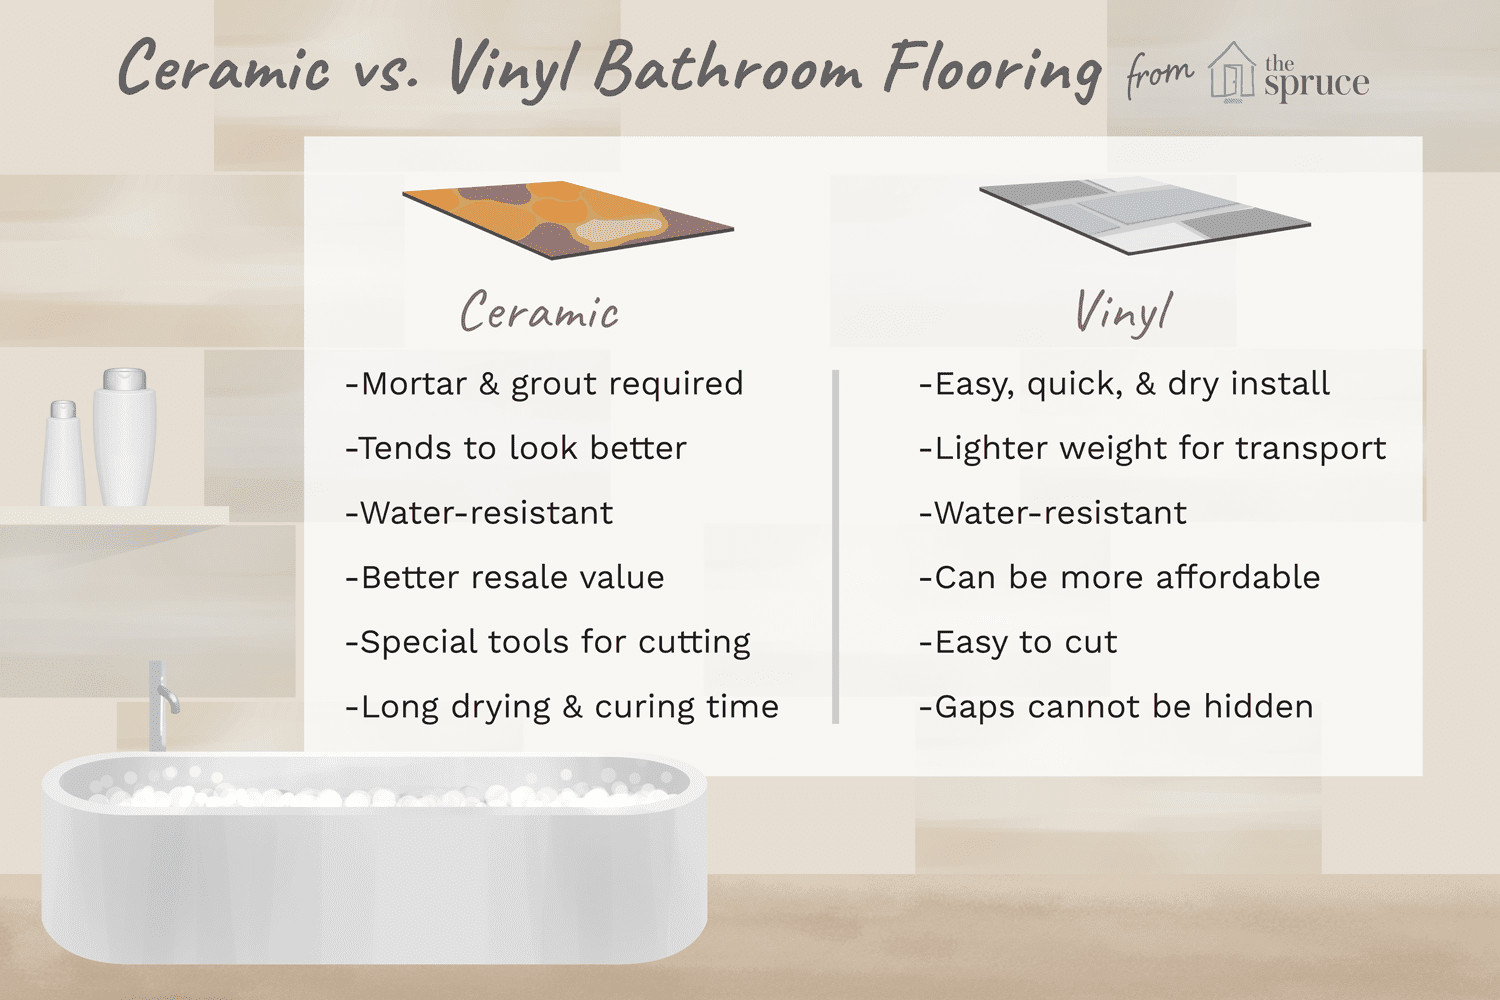 Porcelain Tile Vs Hardwood Flooring Cost Of Bathroom Vinyl Tile Vs Ceramic Tile Pertaining to Bathroom Ceramic Tile Vs Vinyl Plank 1822815 Final 5bae841646e0fb002670b7c6